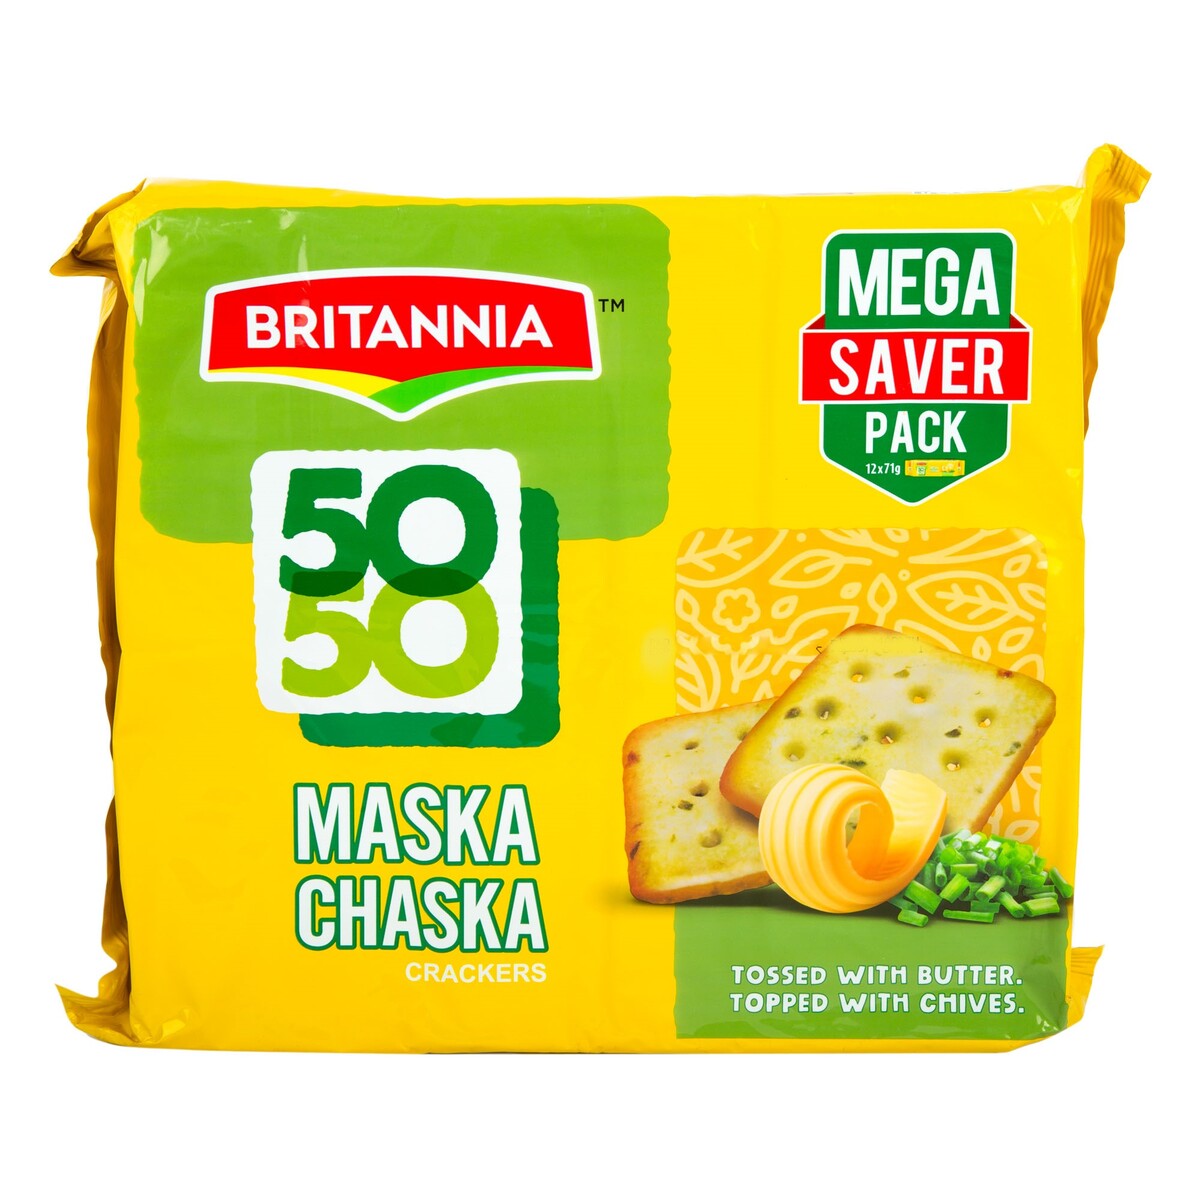 Britannia 50-50 Maska Chaska Crackers 71g 8+4